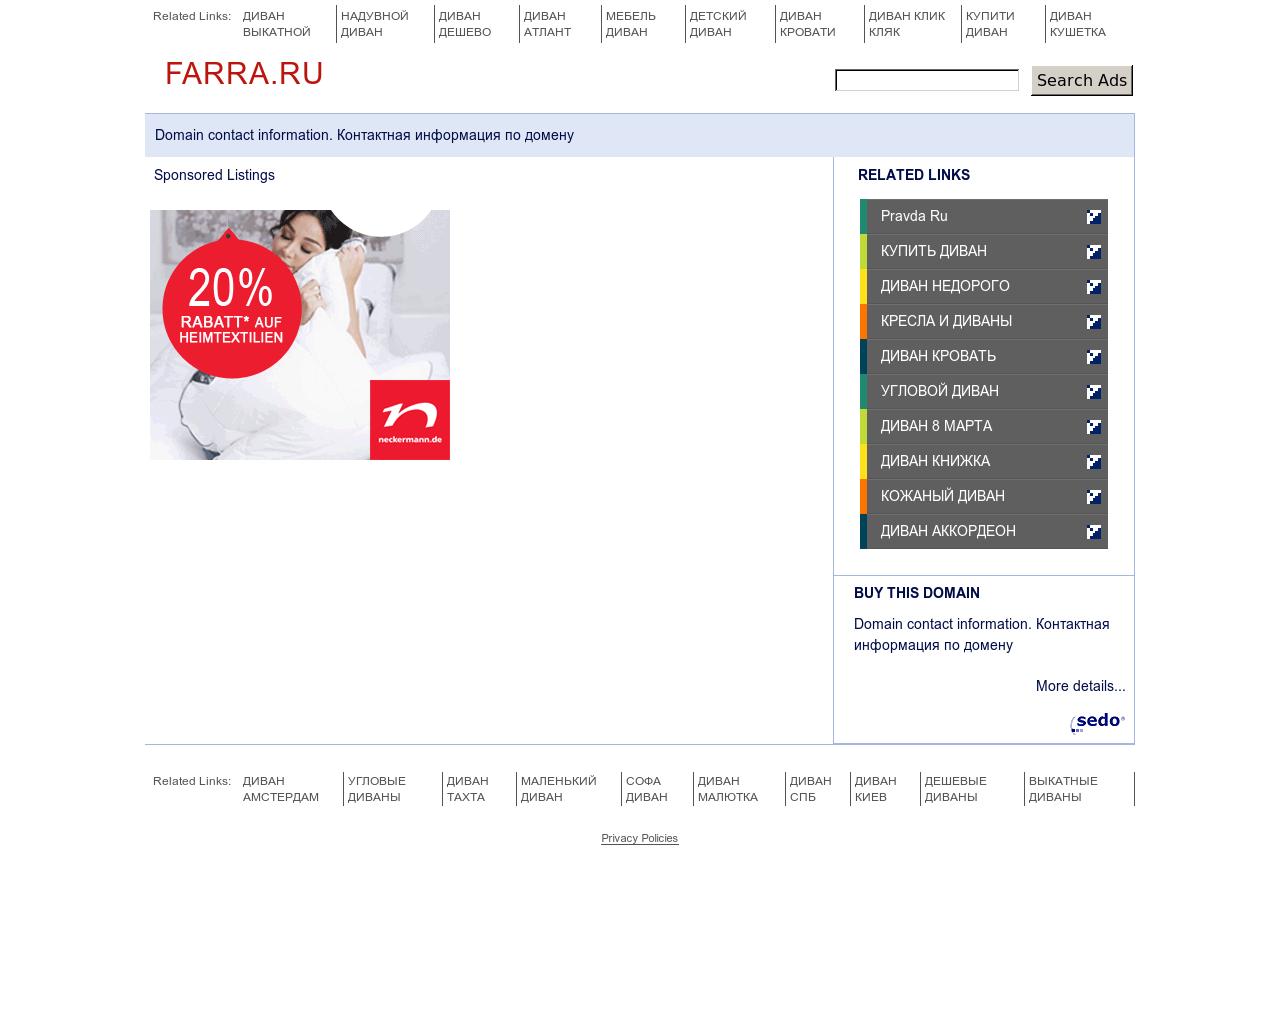 Изображение сайта farra.ru в разрешении 1280x1024